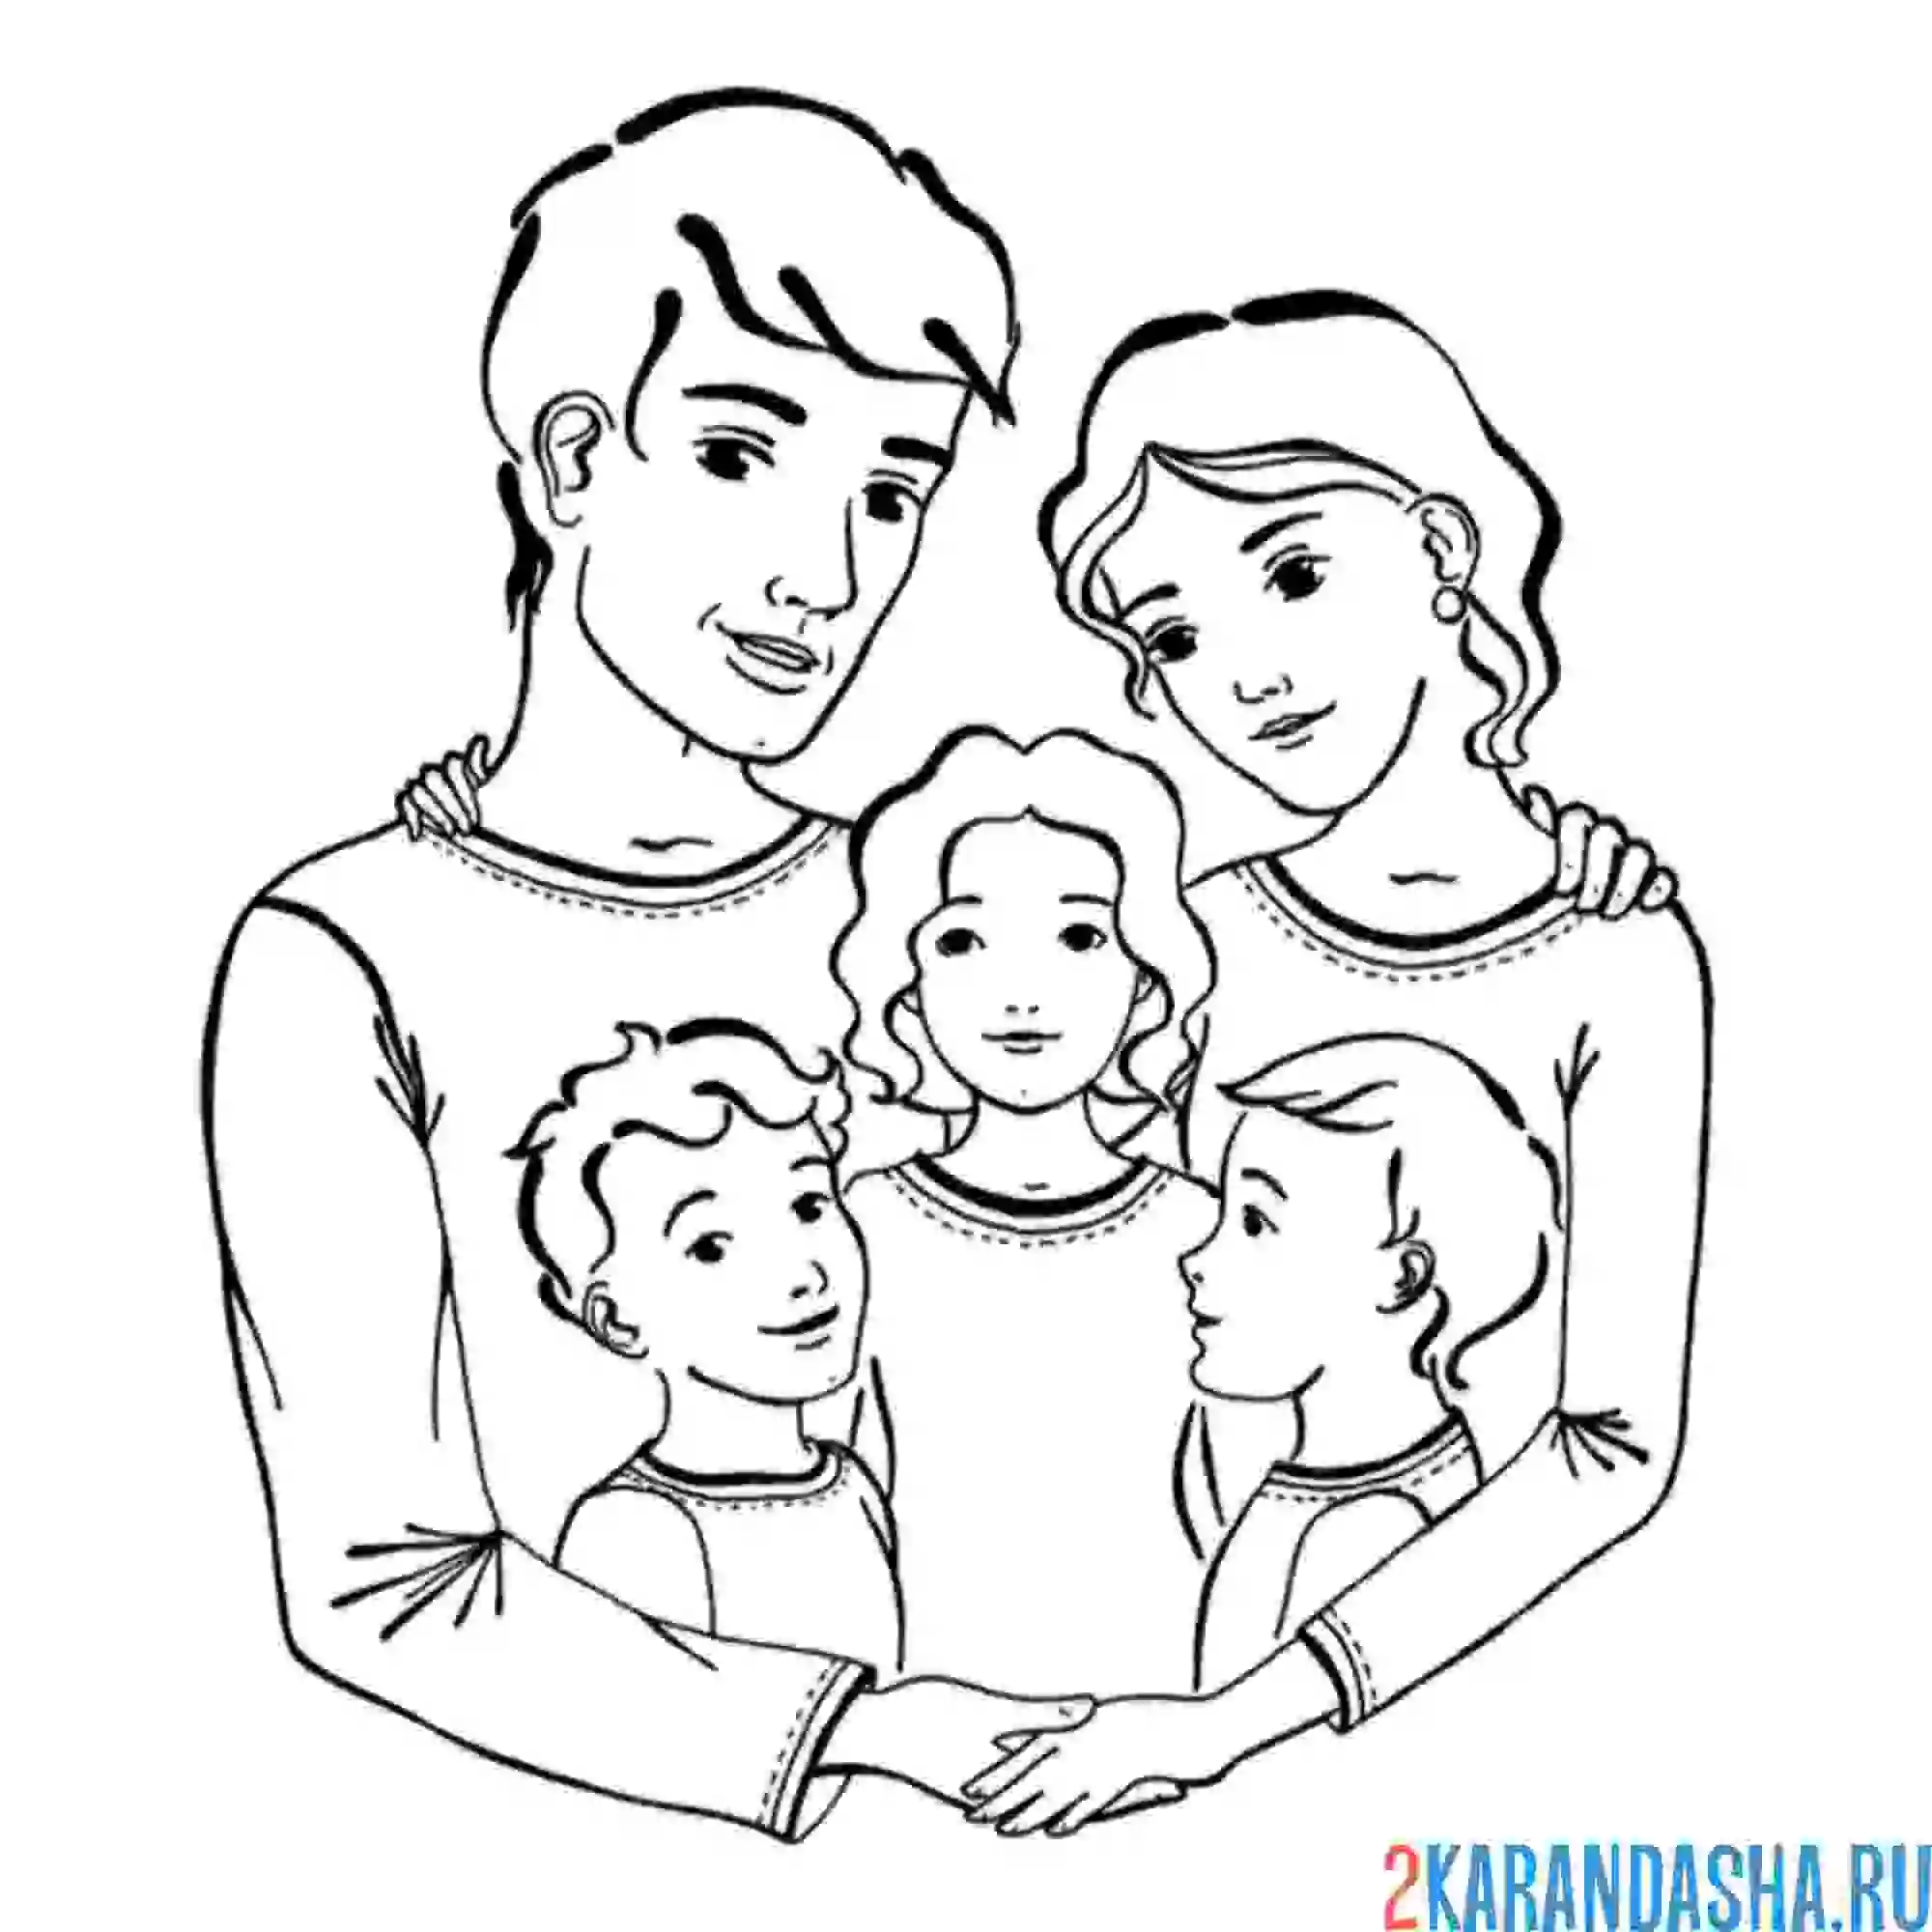 Картинки мамы папы сестры. Семья раскраска для детей. Семья рисунок. Контуры семьи для рисования. Рисунок семьи 3 человека.